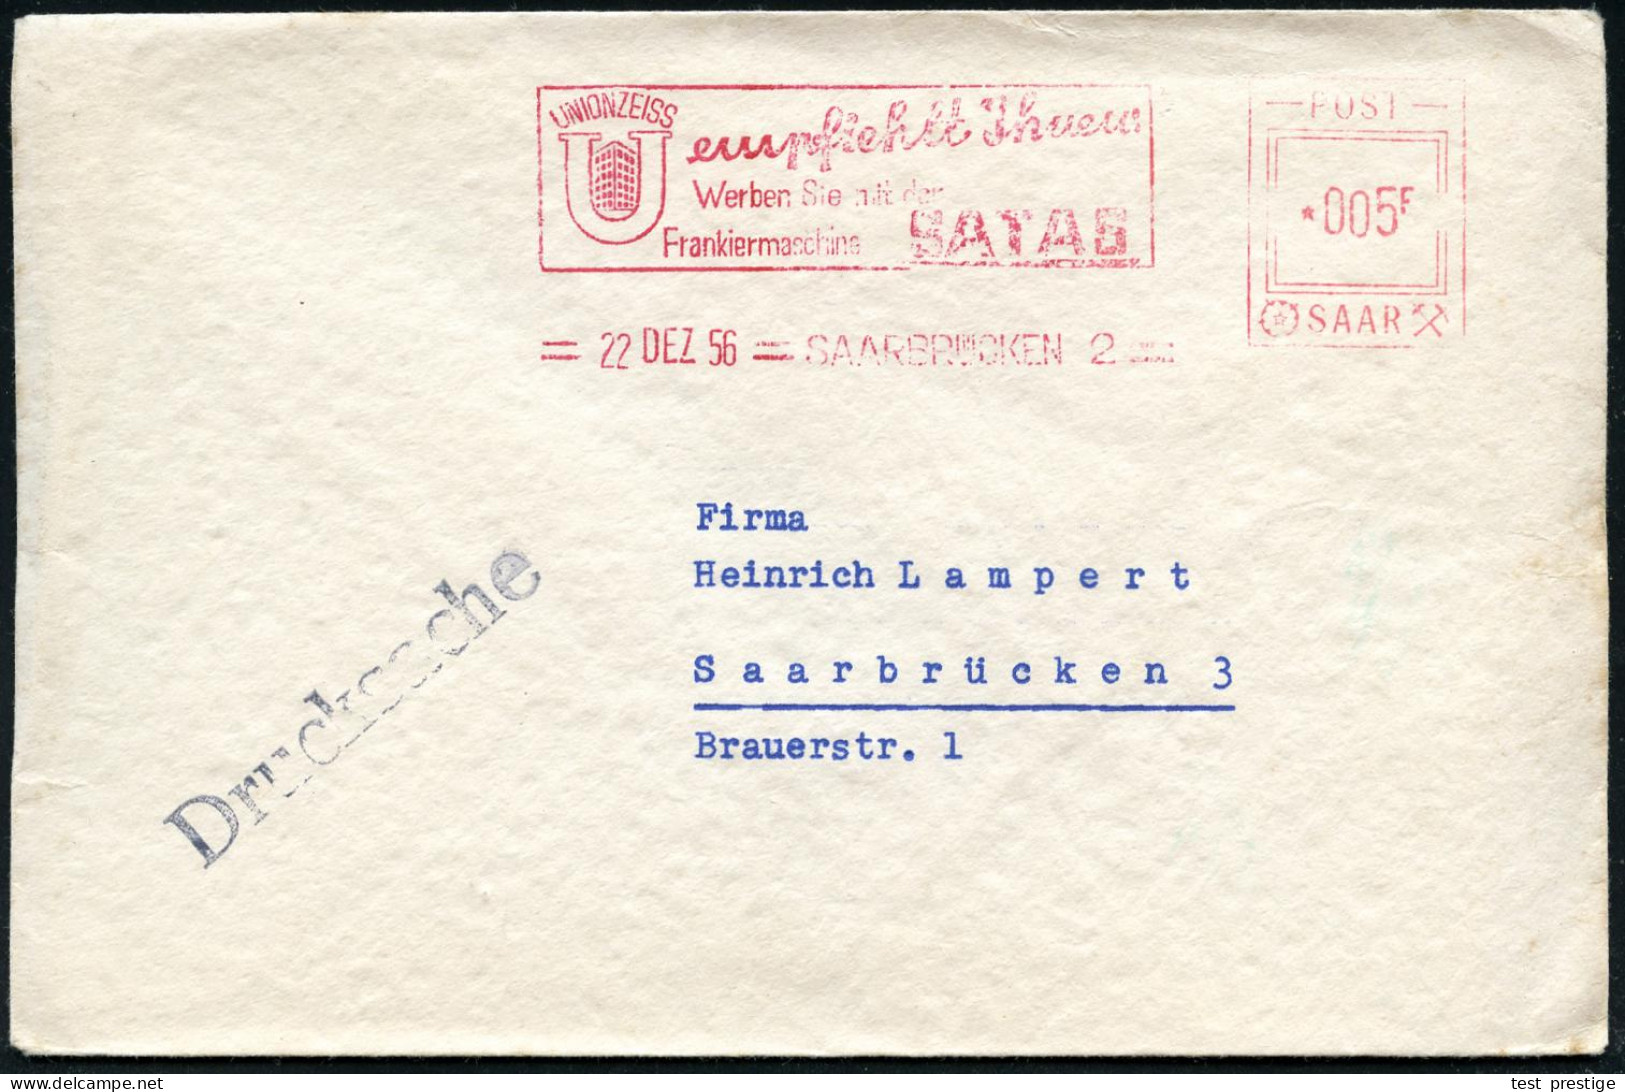 SAARBRÜCKEN 2/ UNION ZEISS../ Werben Sie Mit Der/ Frankiermaschine SATAS 1956 (22.12.) AFS Satas "POST SAAR" 005 F. (Fir - Other